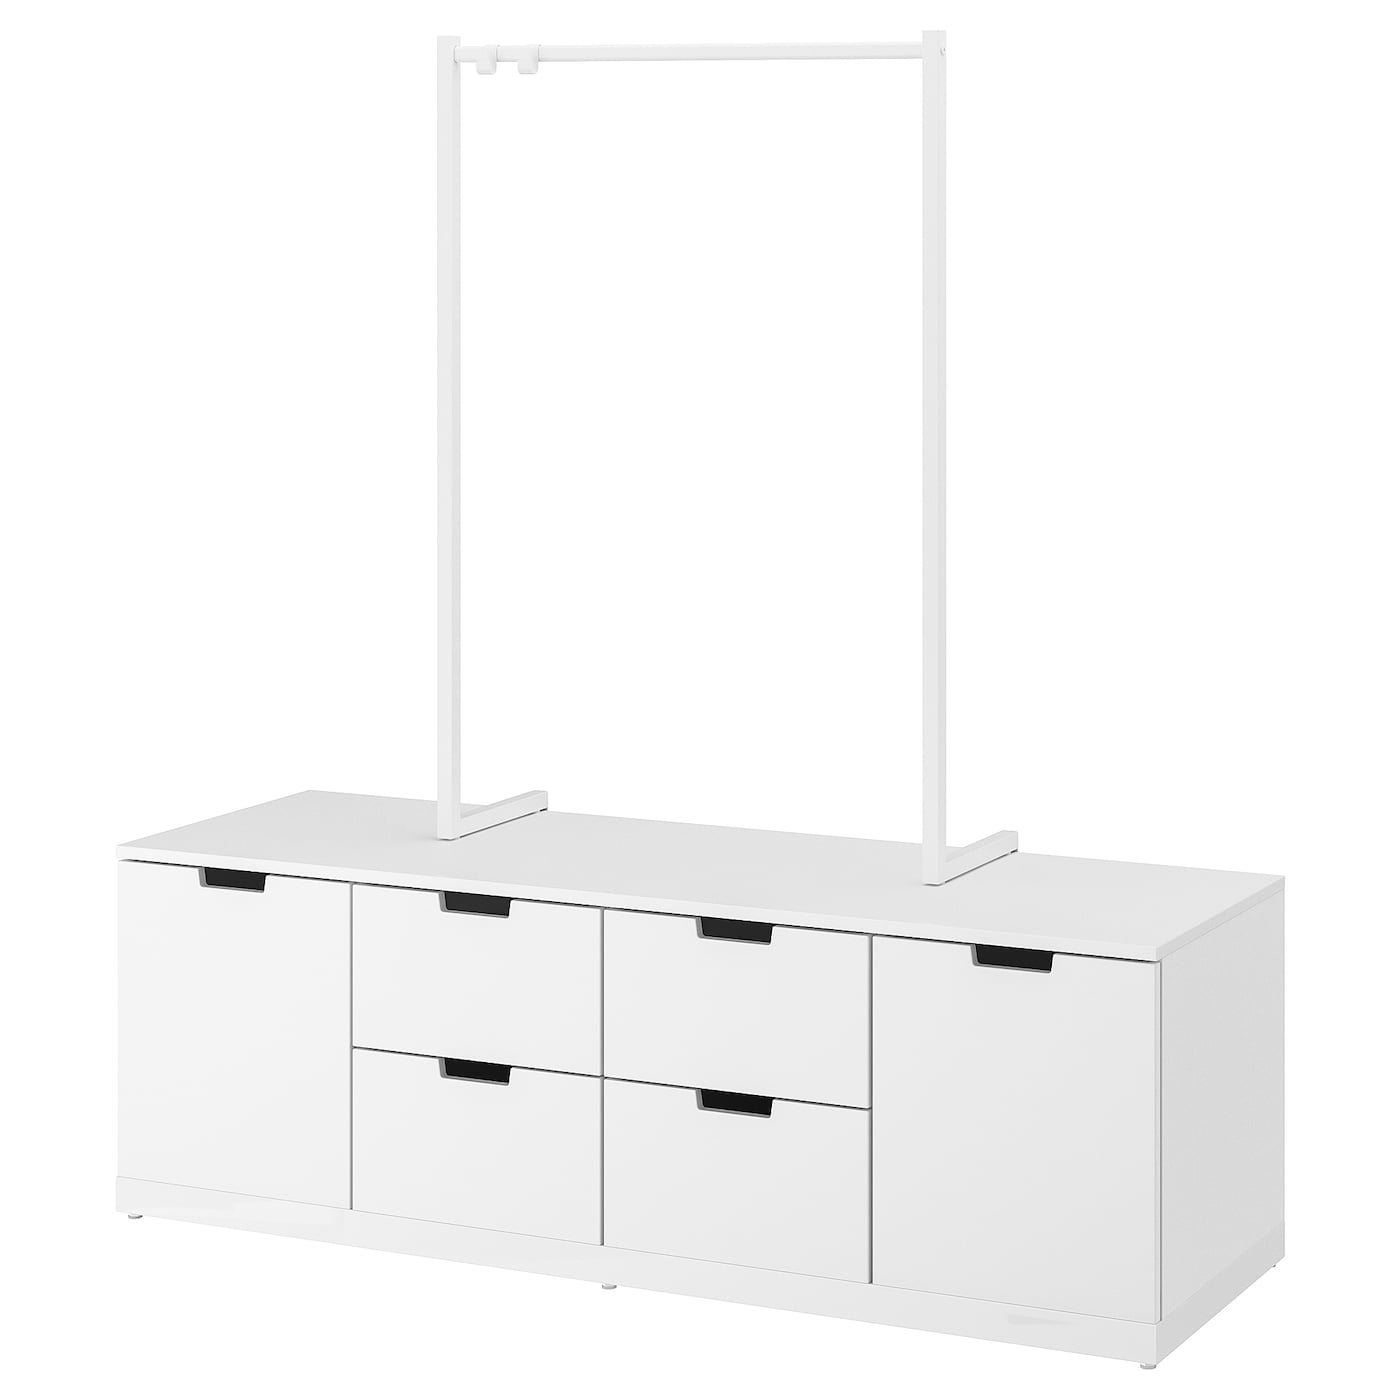 Комод - IKEA NORDLI/НОРДЛИ ИКЕА, 47х169х160 см, белый